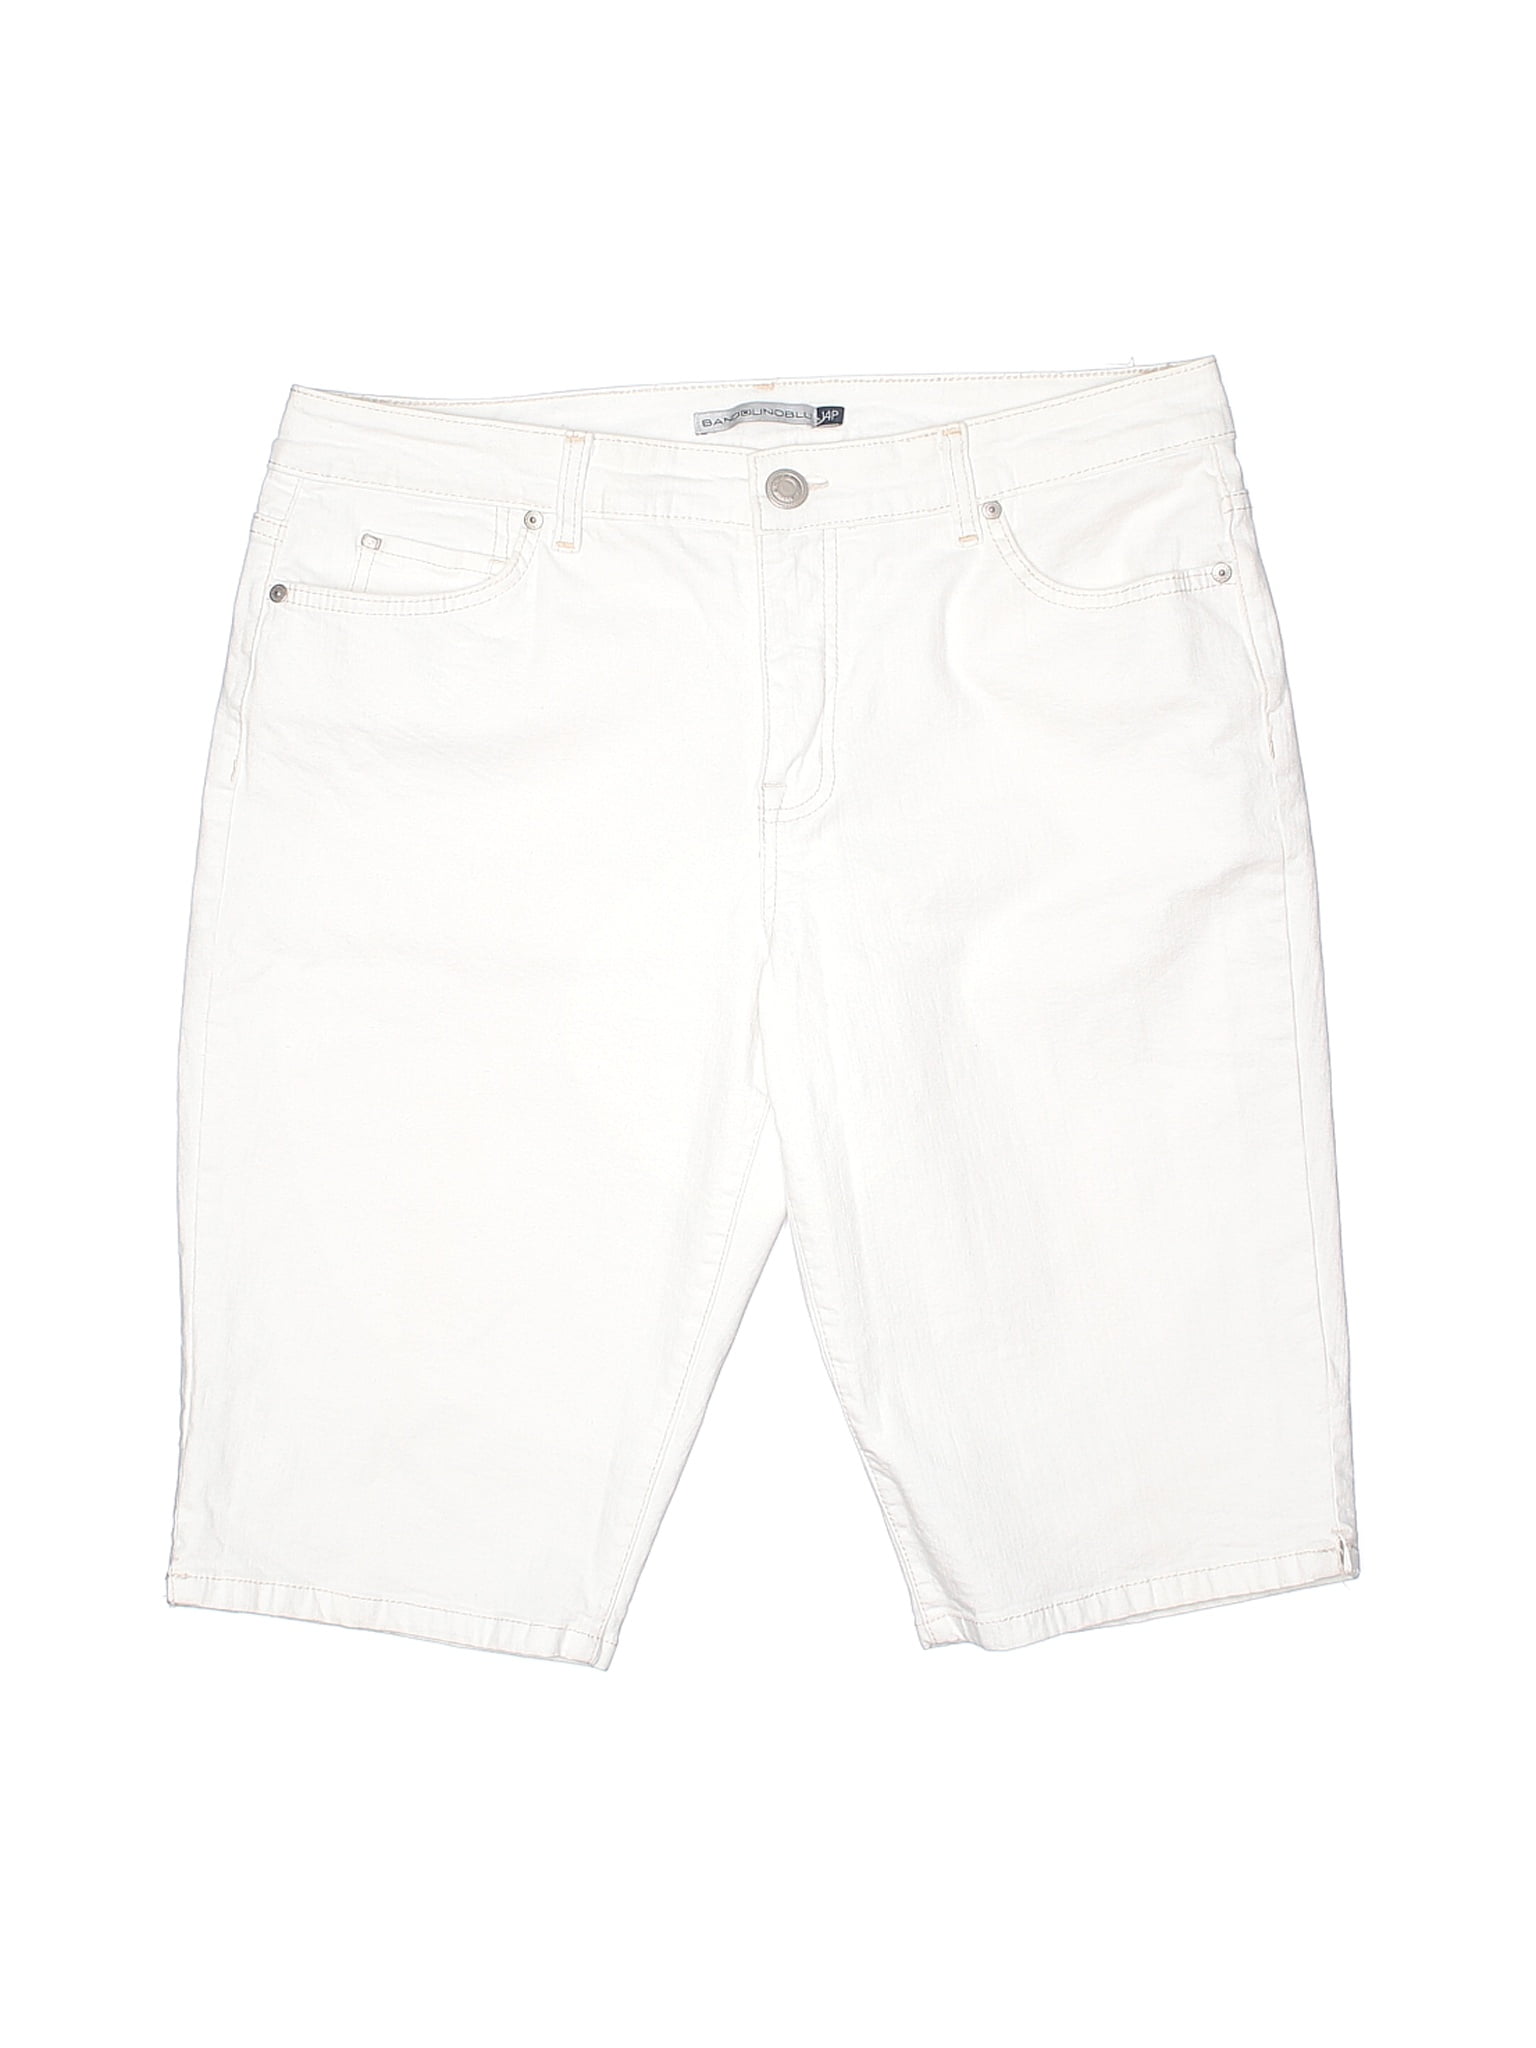 petite white denim shorts